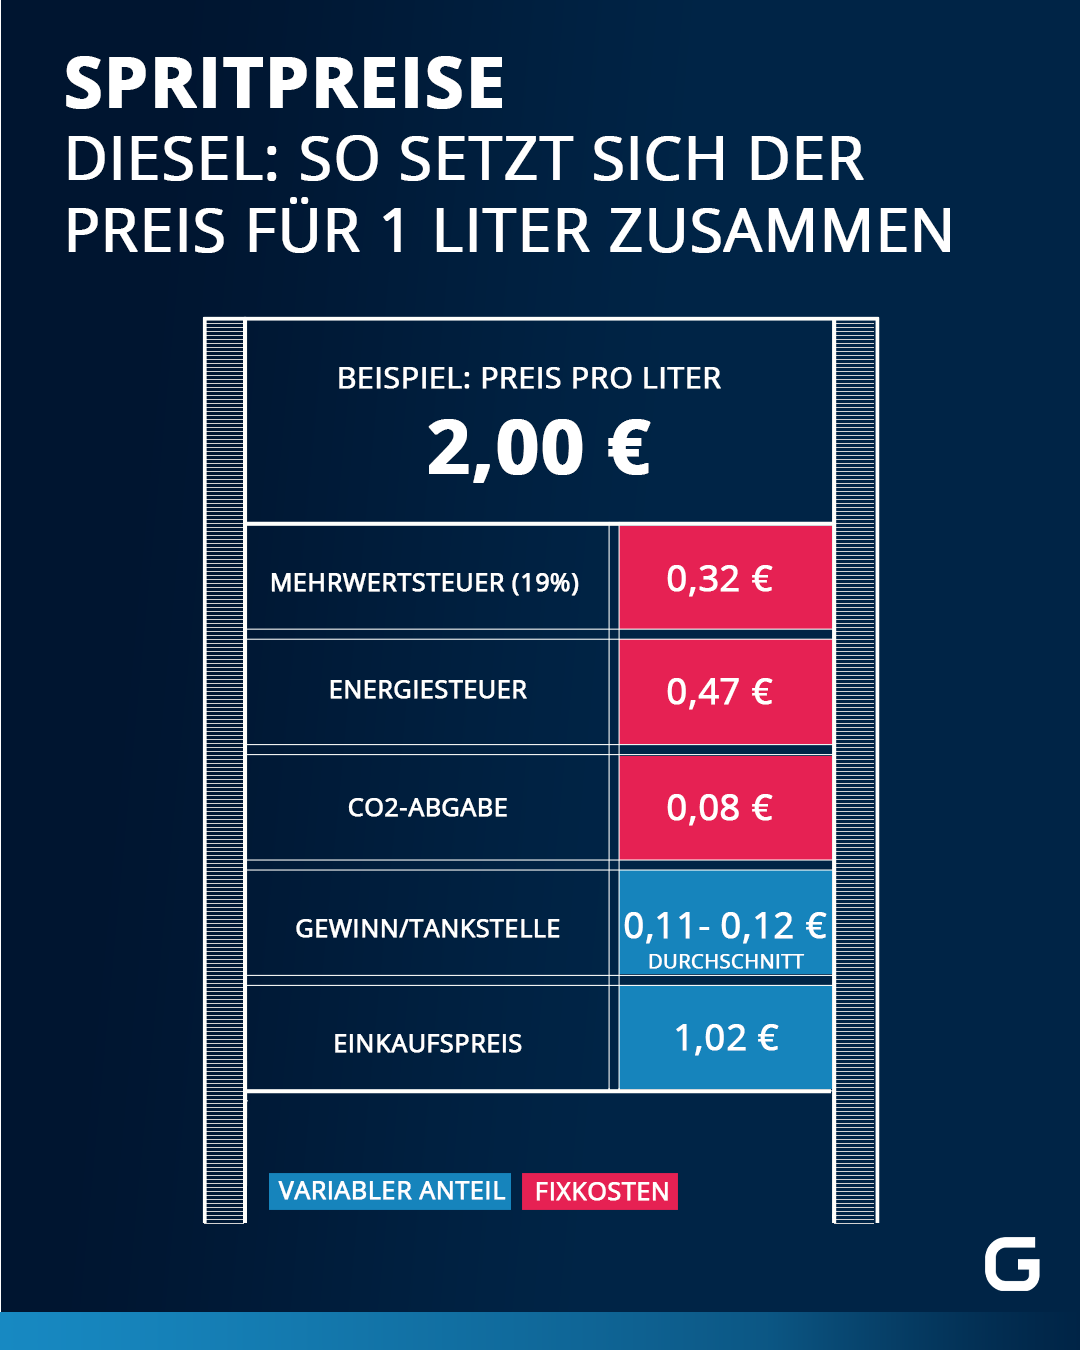 Der Preis für einen Liter Diesel setzt sich aus der Mehrwert- und Energiesteuer, der CO2-Abgabe, dem Einkaufspreis von Rohöl und dem Gewinnanteil der Tankstelle zusammen. Die Höhe des Einkaufpreises und des Gewinnanteils können täglich variieren. Wir rechnen hier mit einem Beispielpreis von zwei Euro. 